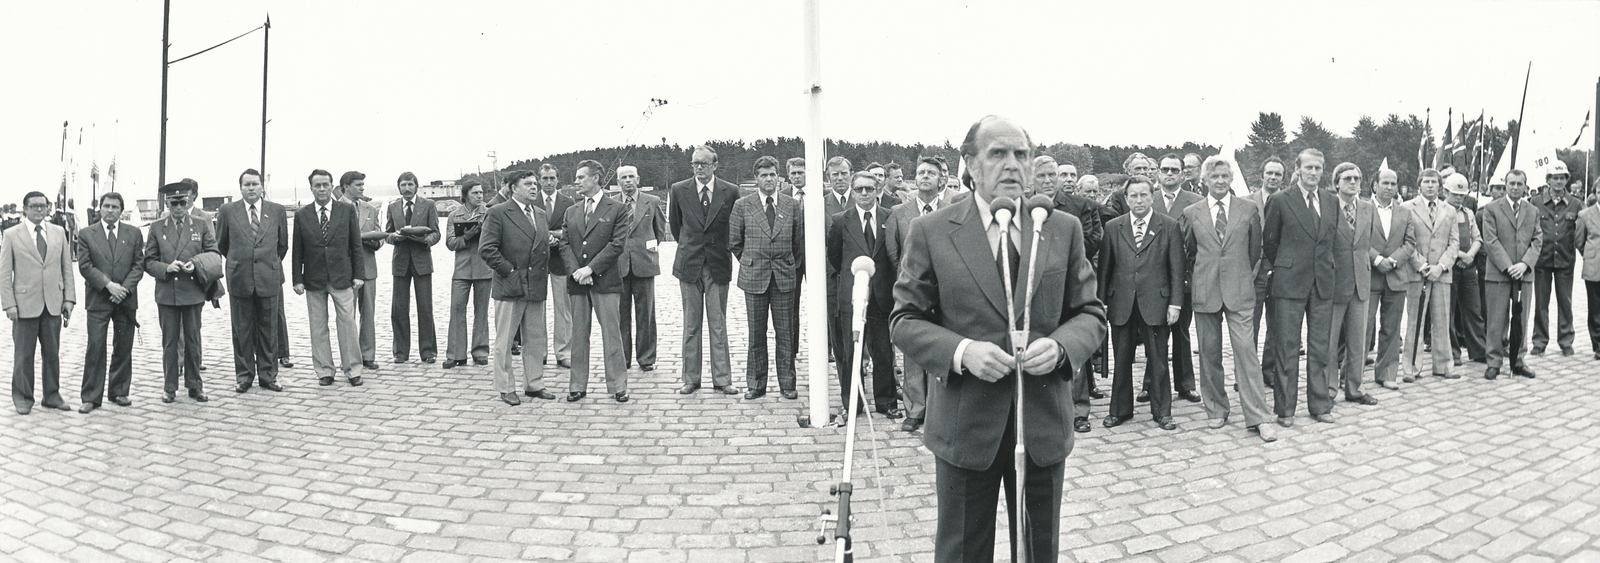 Tallinna Olümpia Purjespordikeskuse avamine